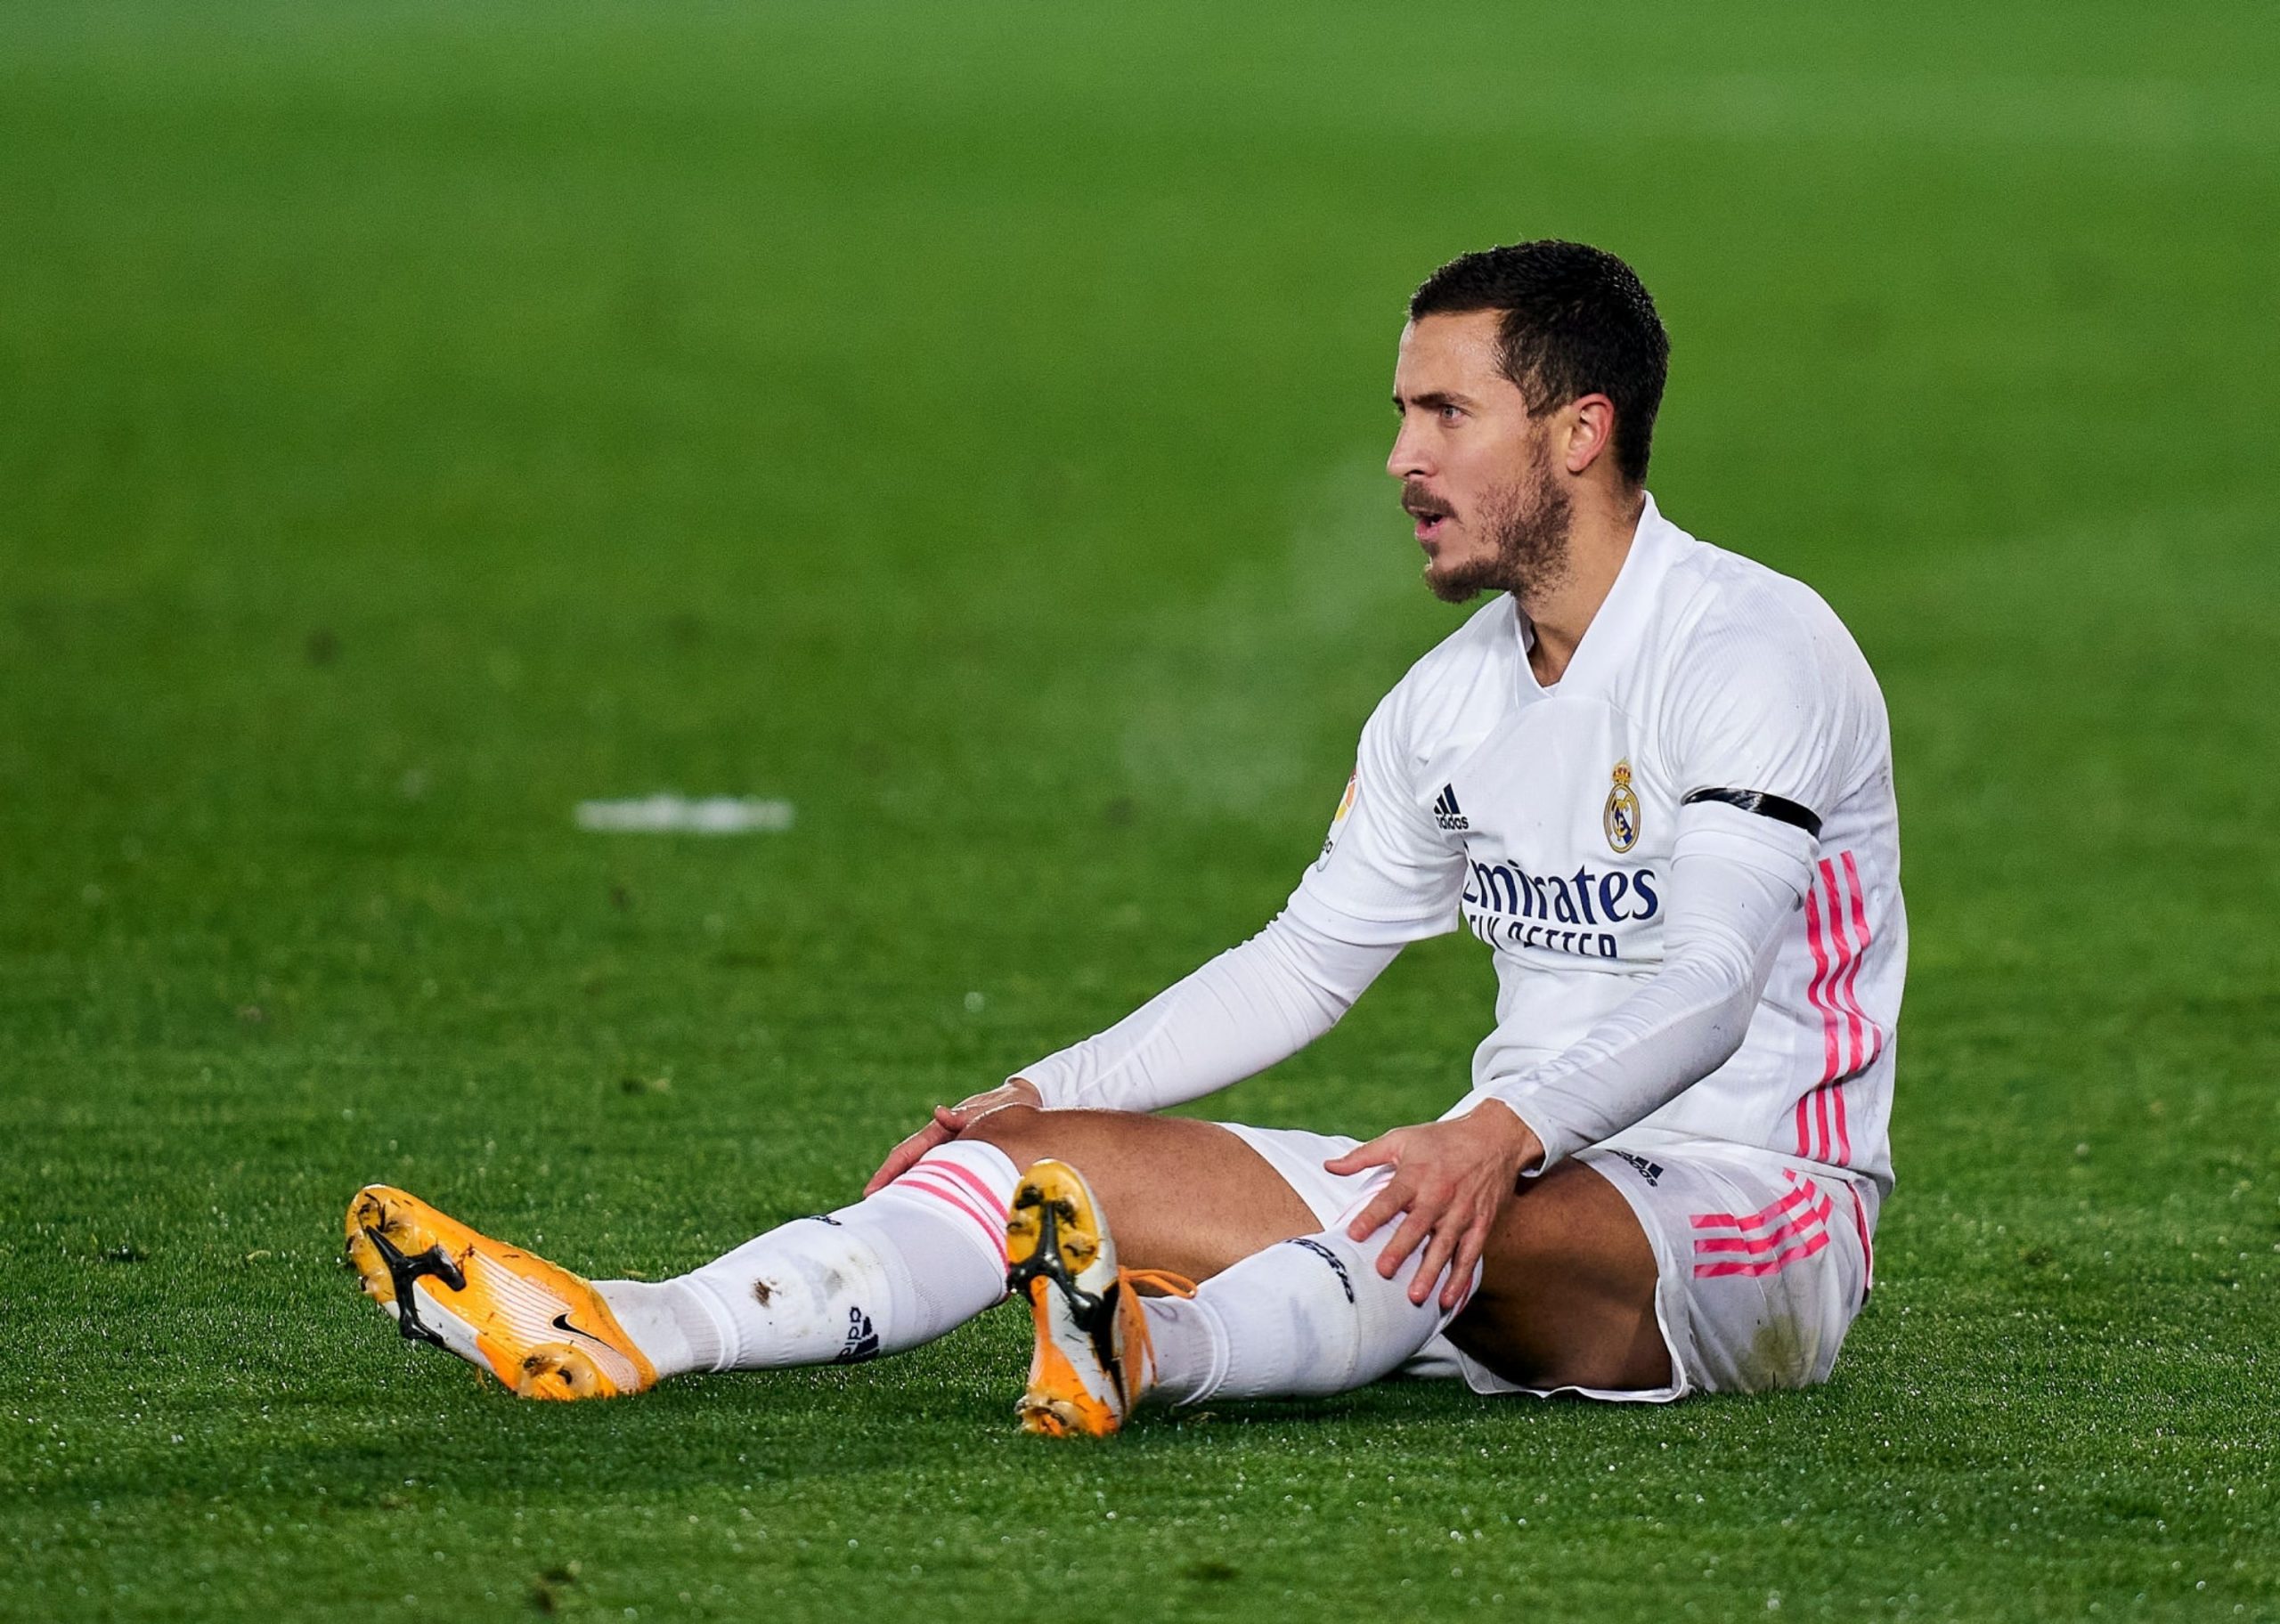 Liga dos Campeões: Eden Hazard e Real Madrid, a história de uma oportunidade perdida